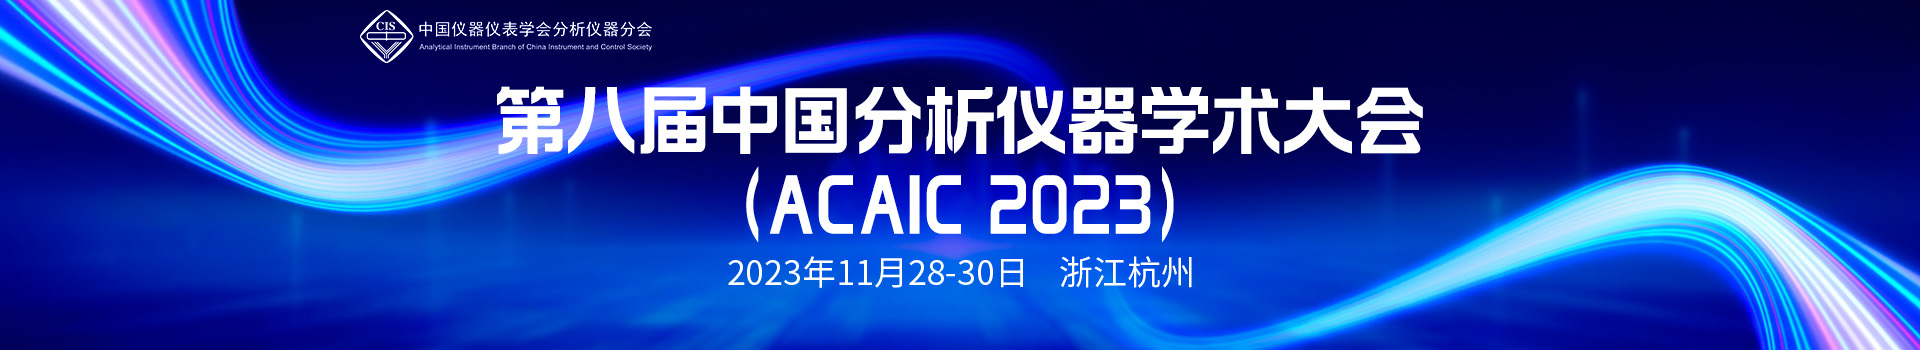 第八届中国分析仪器学术大会